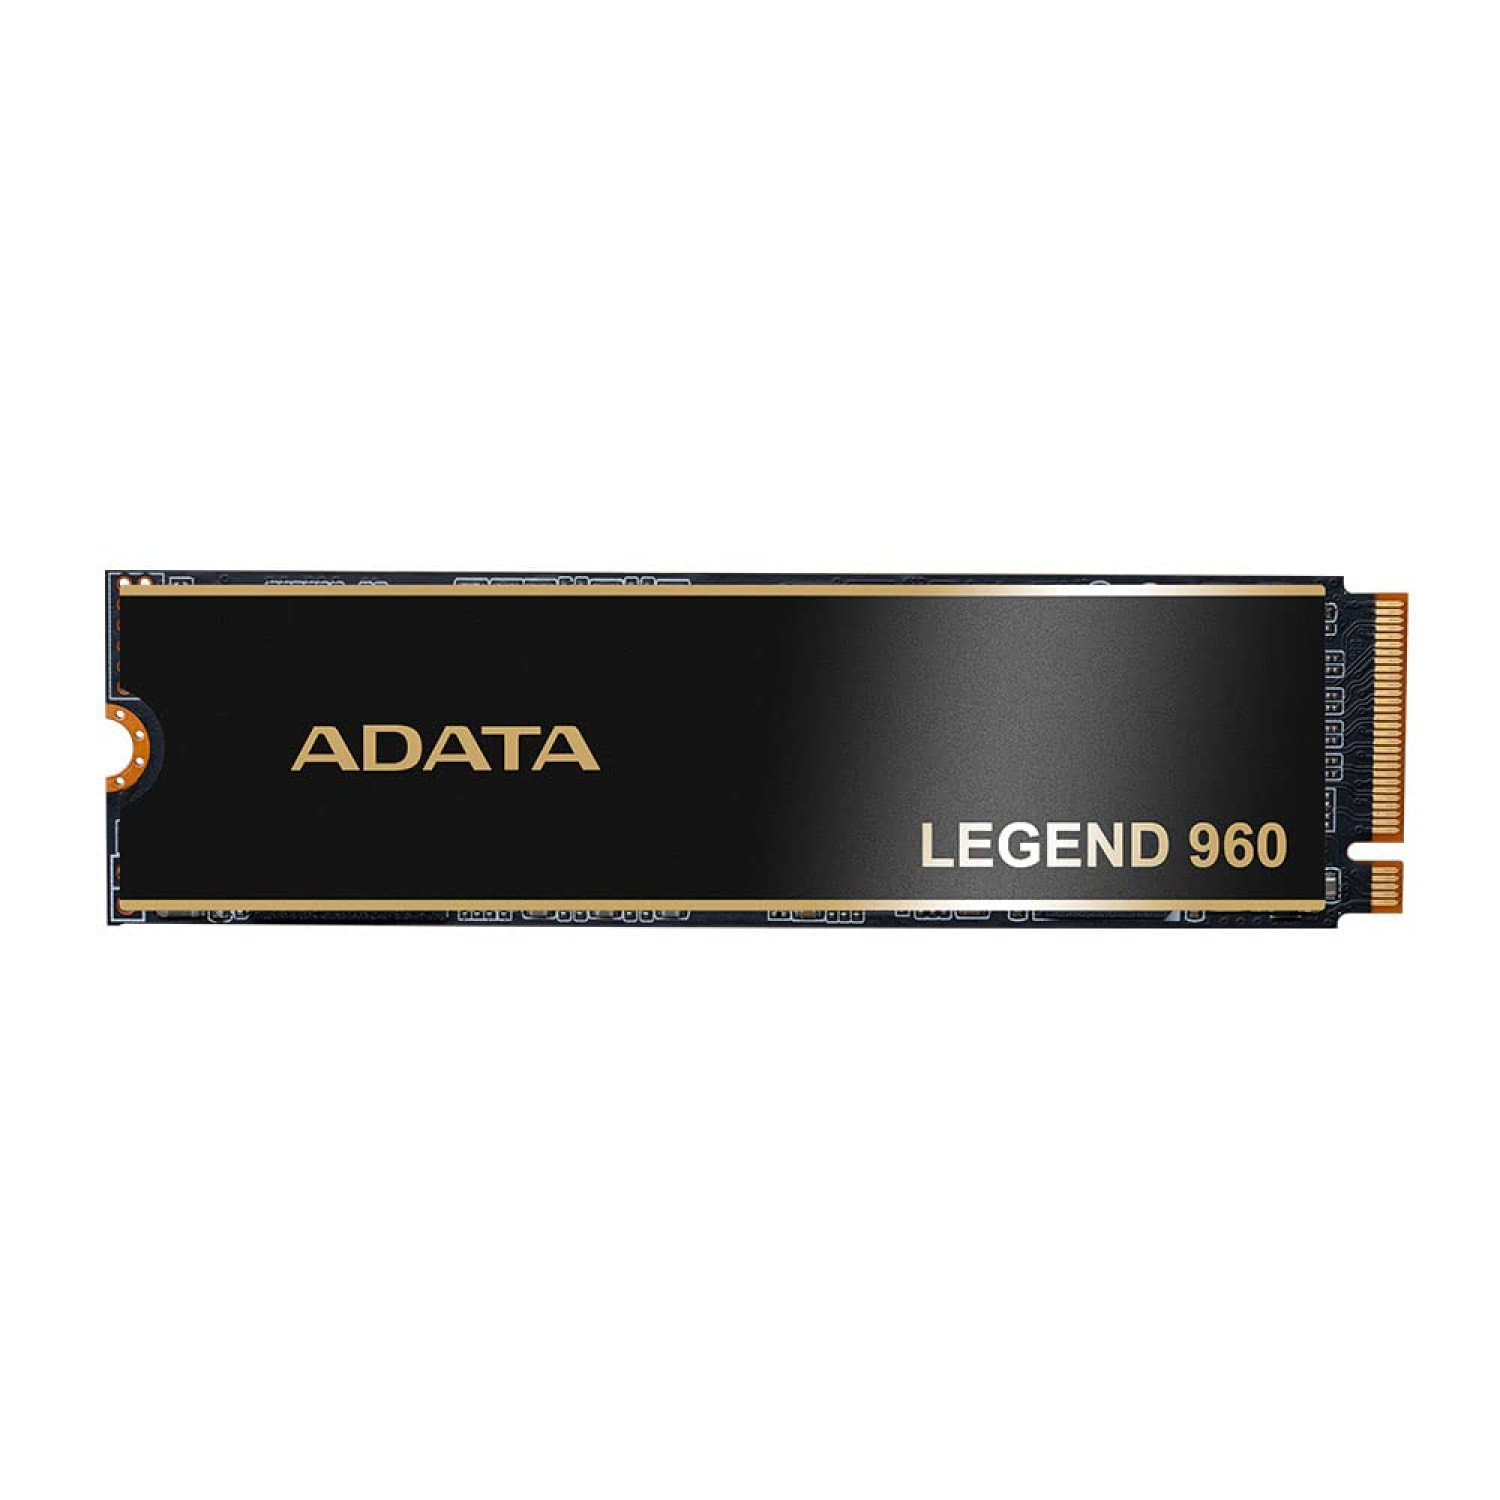 حافظه اس اس دی ADATA Legend 960 1TB